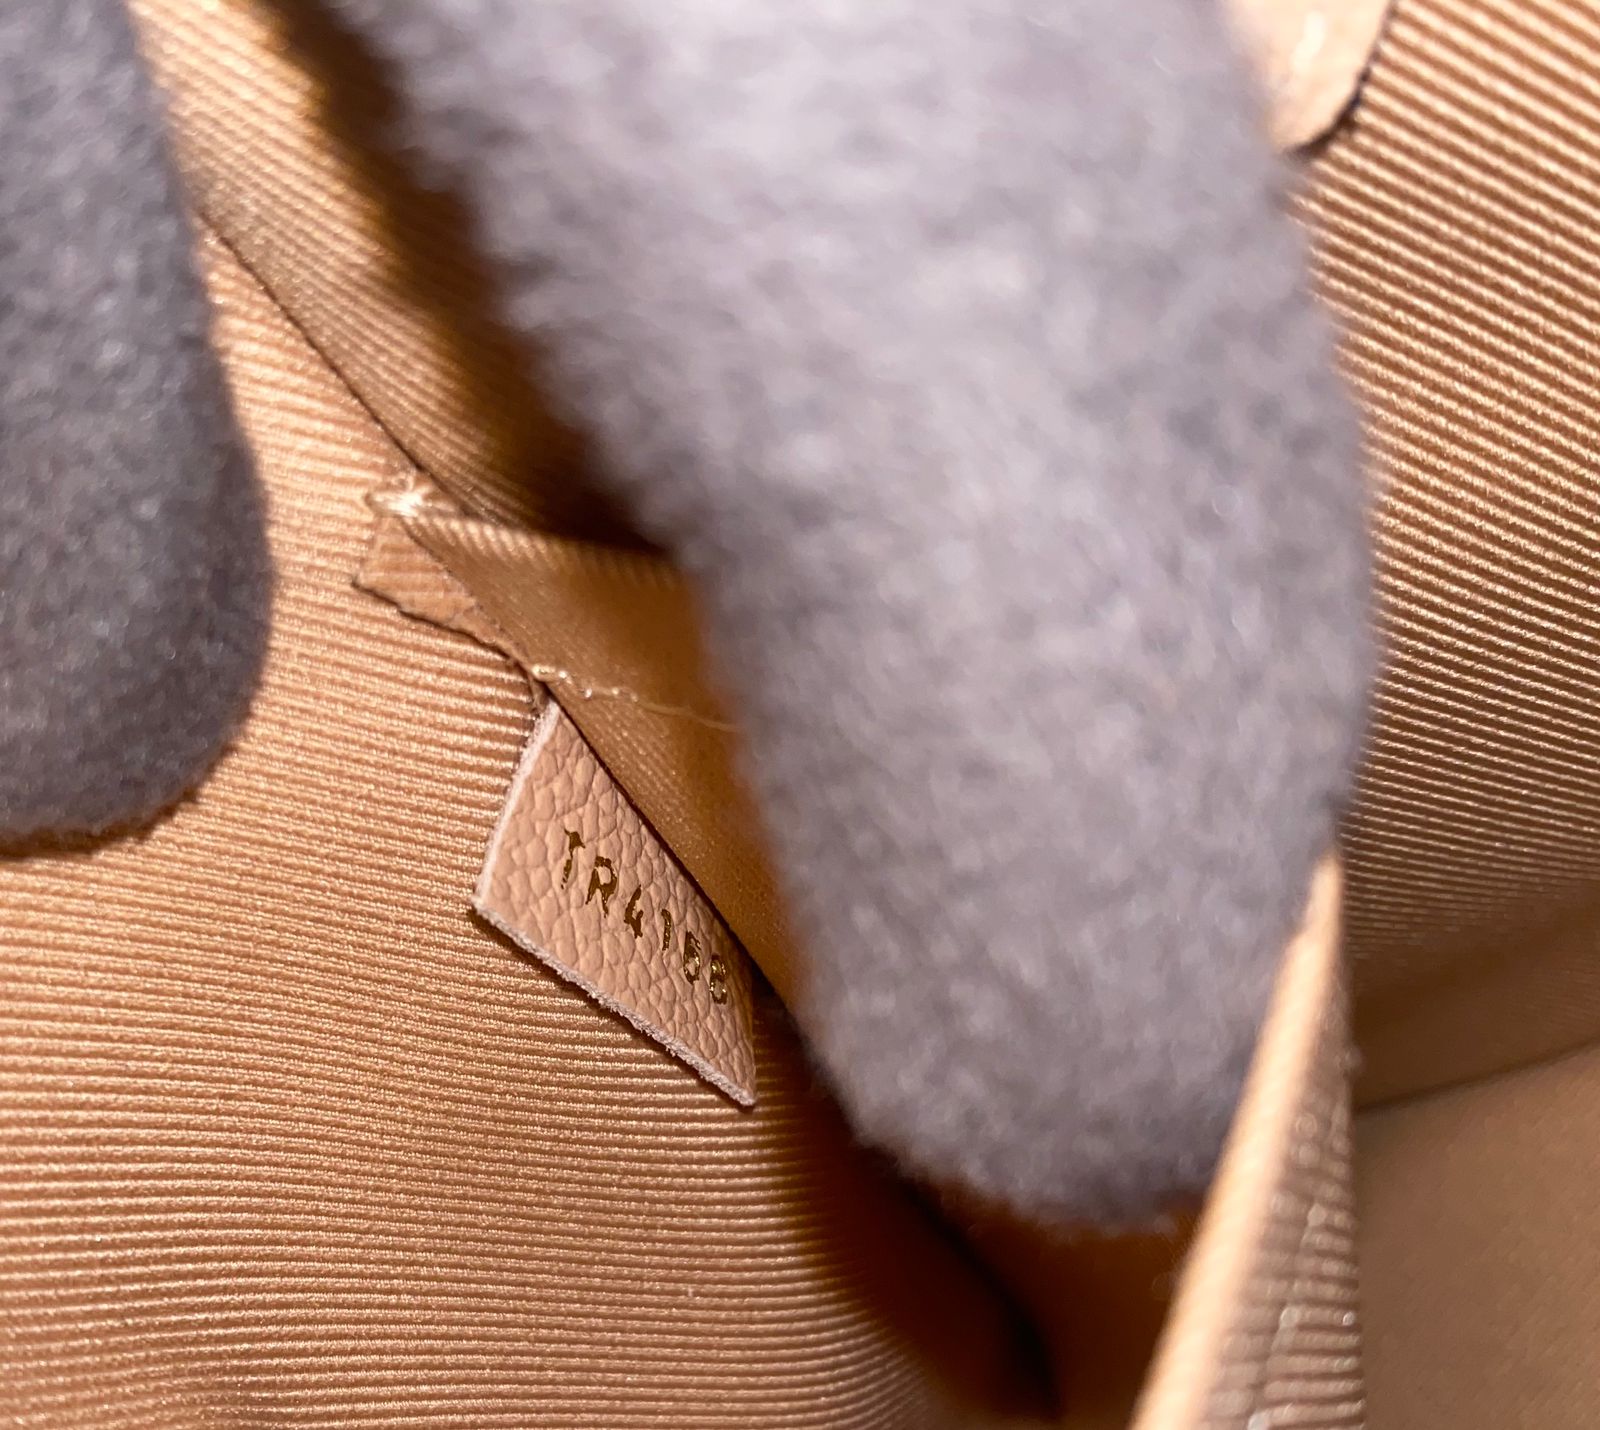 Louis Vuitton Beige Rose Cream Monogram Empreinte Leather Sully PM Bag -  Yoogi's Closet